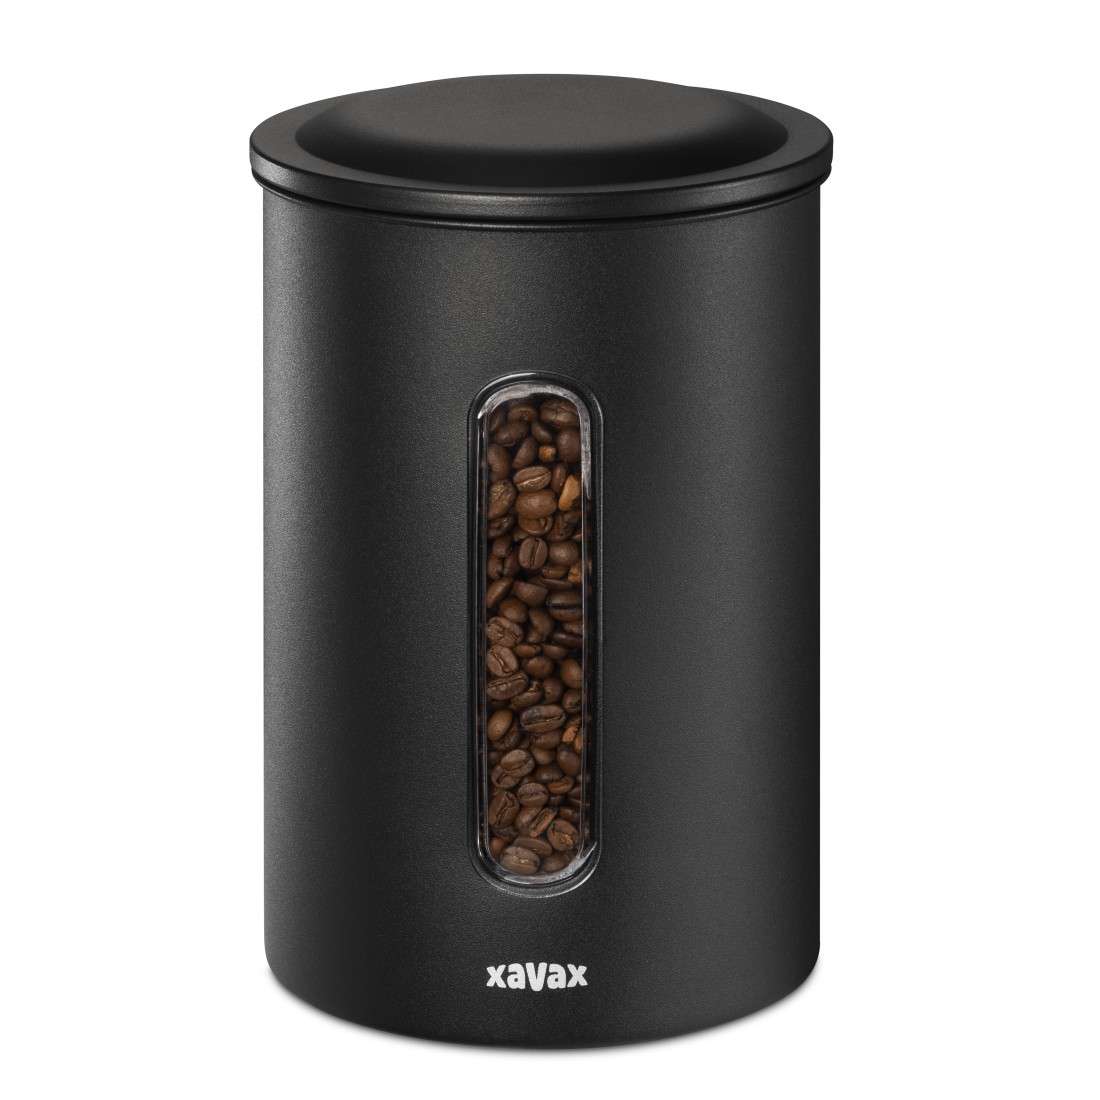 XAVAX Kaffeedose für 1,3kg Bohnen o. 1,5kg Pulver, luftdicht, aromadicht, Schwarz